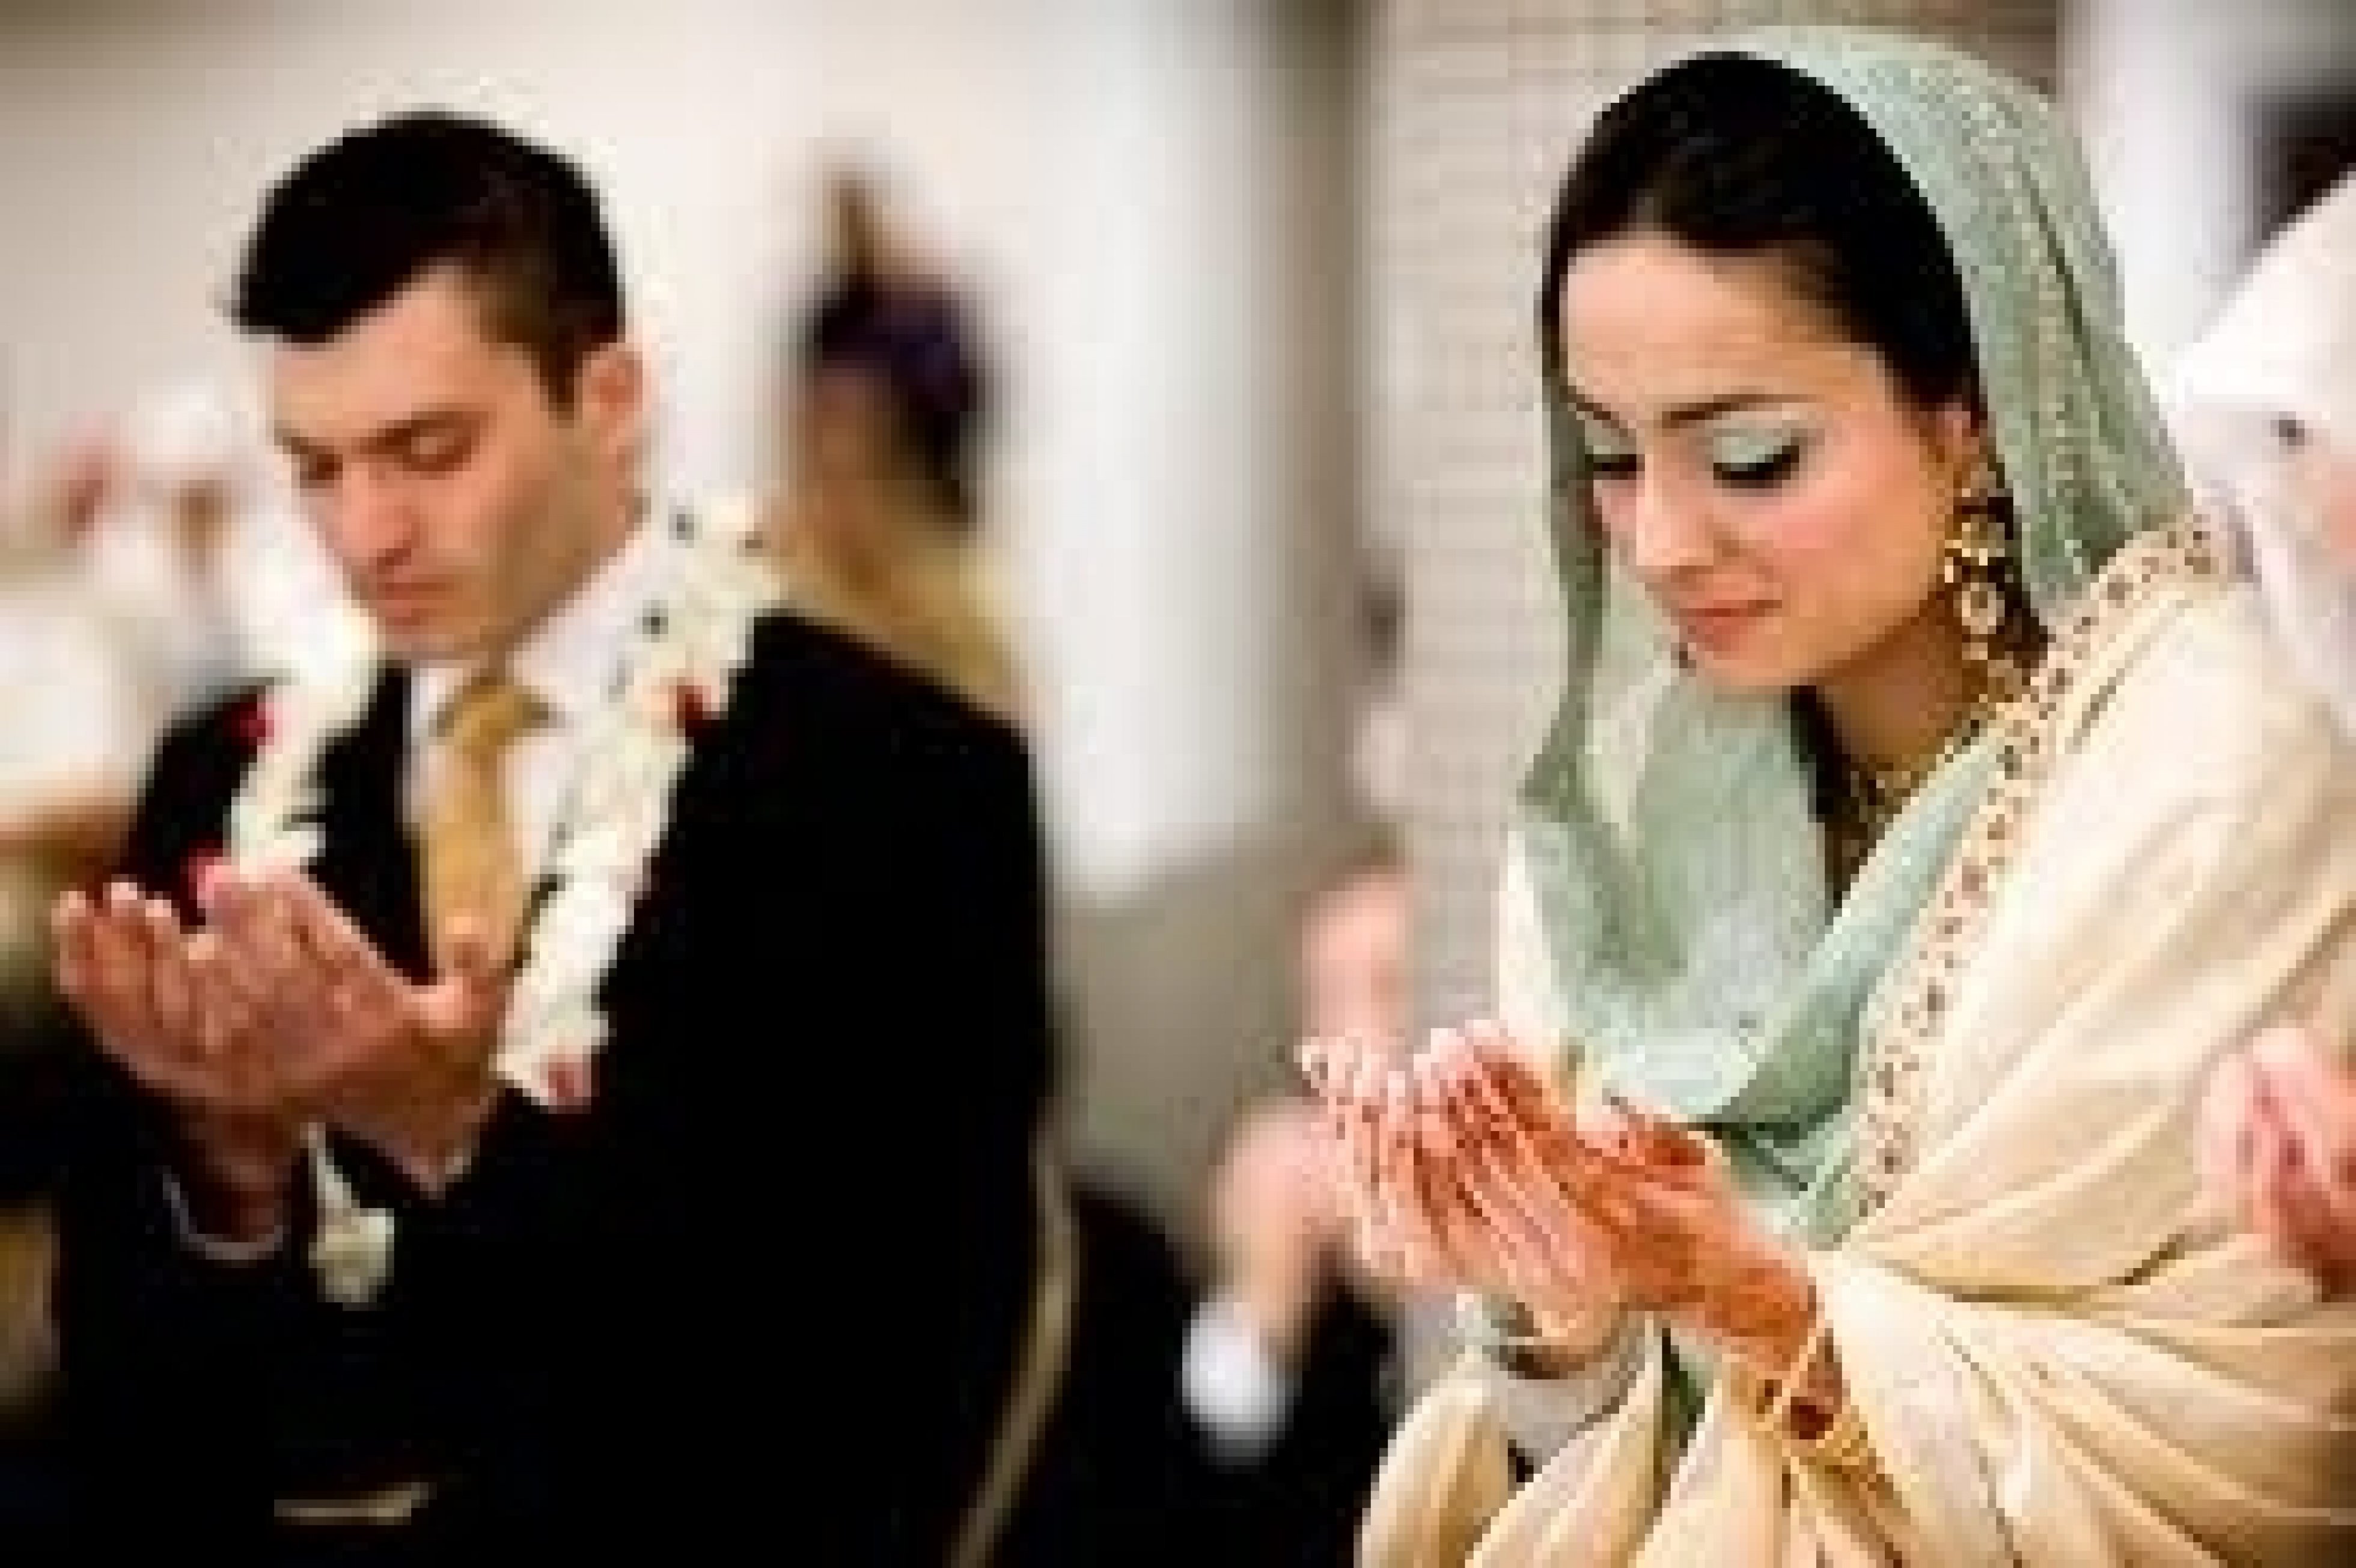 Свадебные традиции мусульман